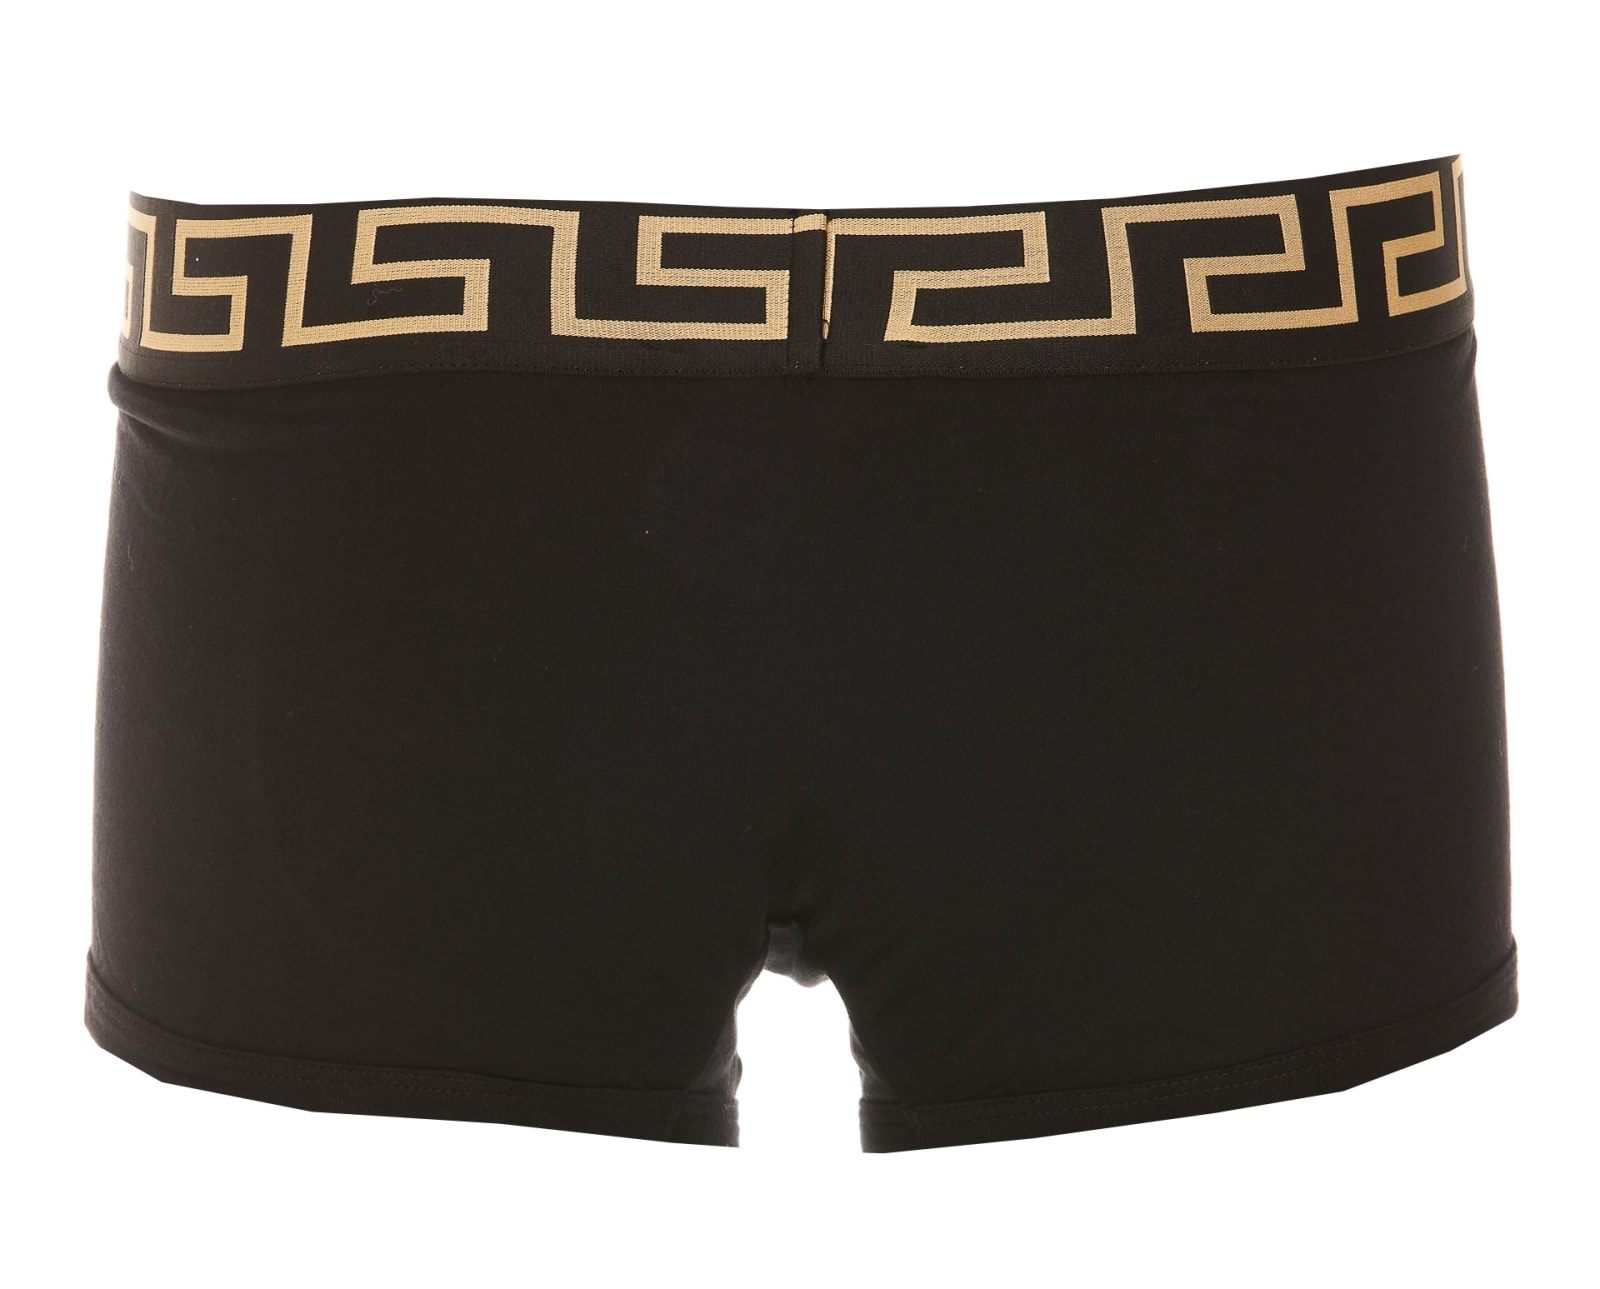 Versace Underwear Two-Pack Black & Gray Greca Border Briefs